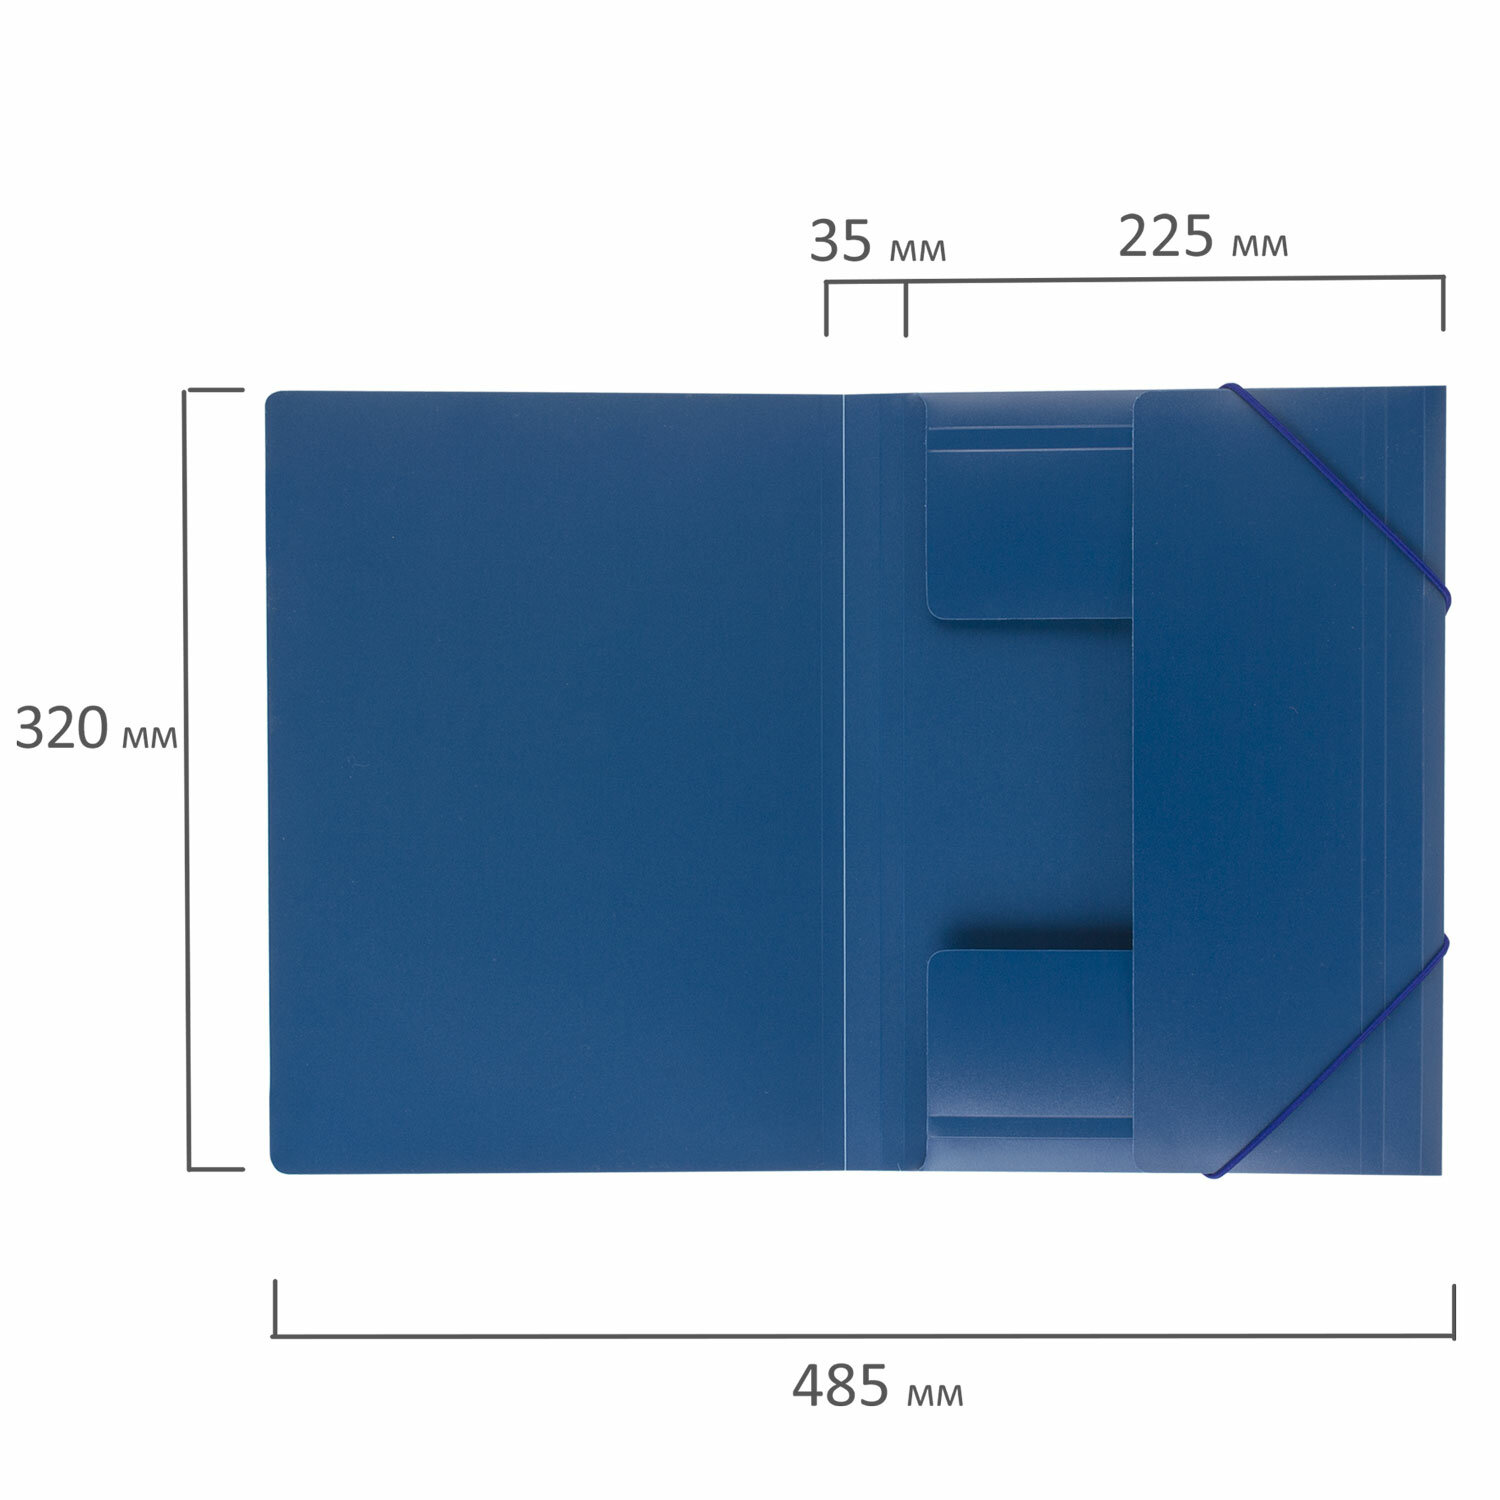 Папка на резинках BRAUBERG "Стандарт" синяя, до 300 листов, 0,5мм